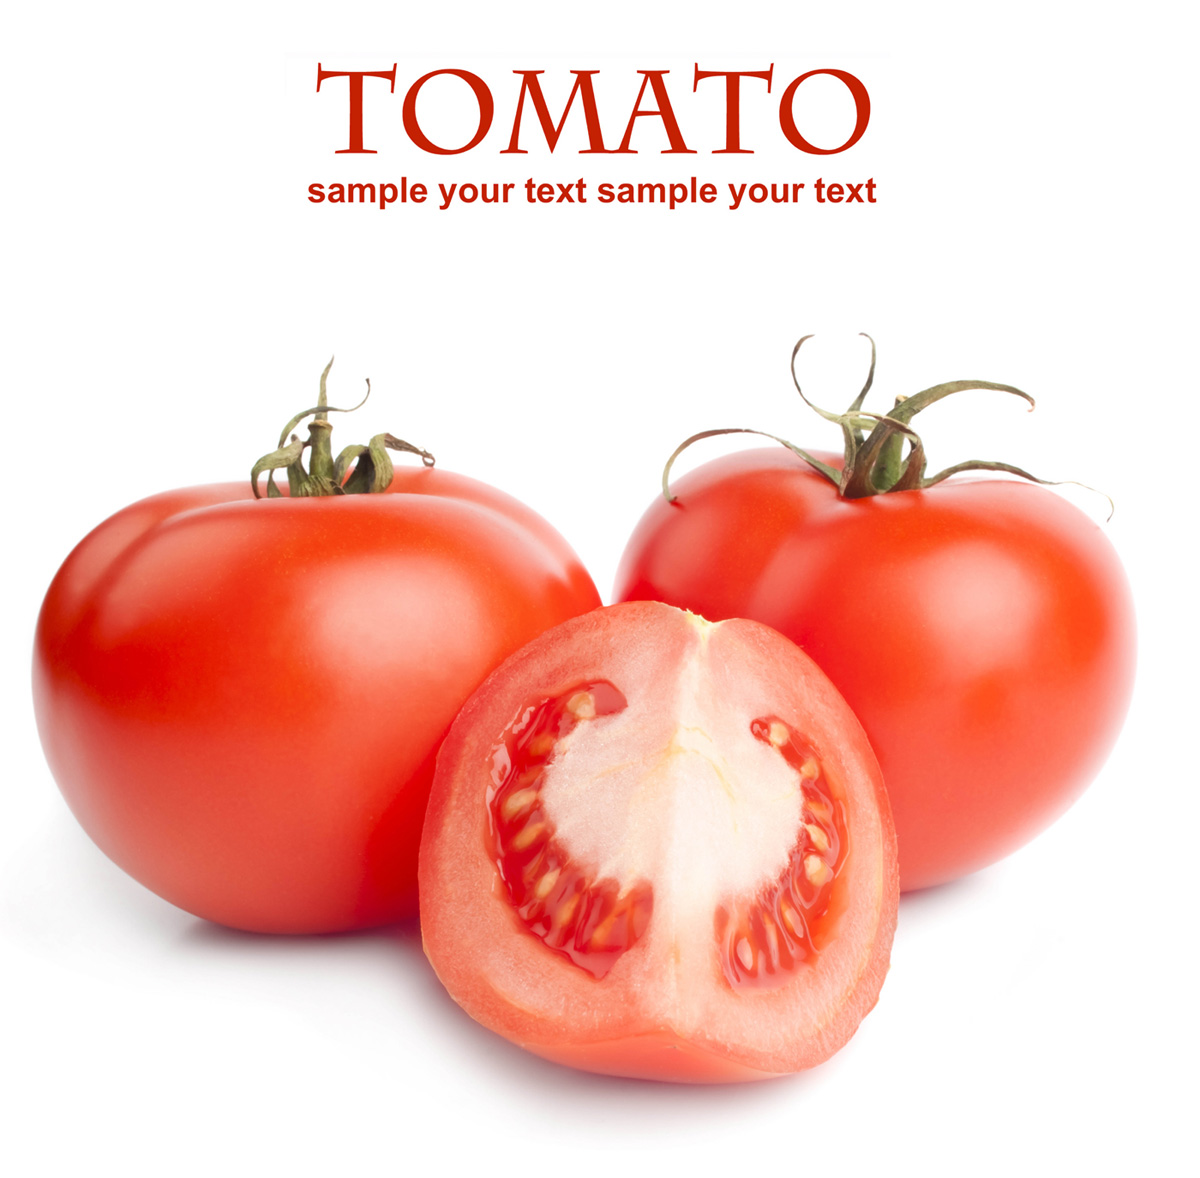 高清晰蔬菜摄影图-西红柿番茄·图片编号为903088,上传时间为2011-05